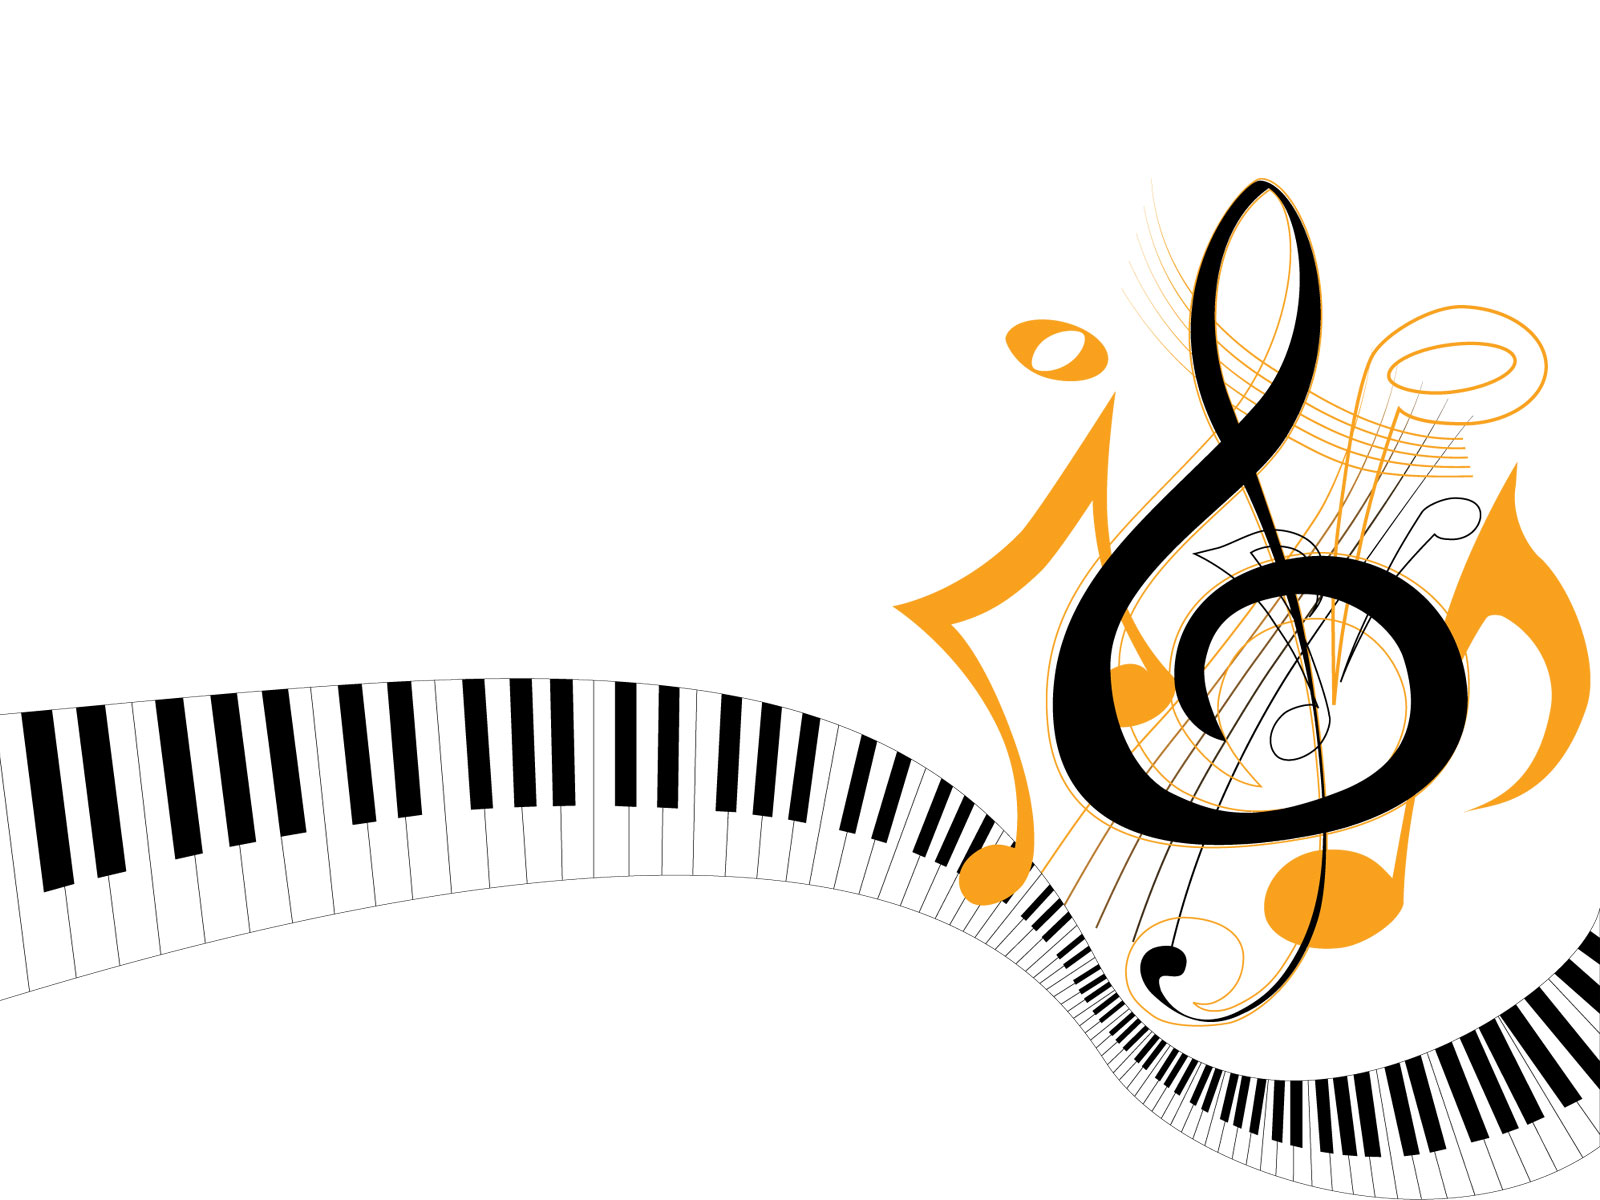 音楽・音符イラスト素材「ピアノの鍵盤と音符」